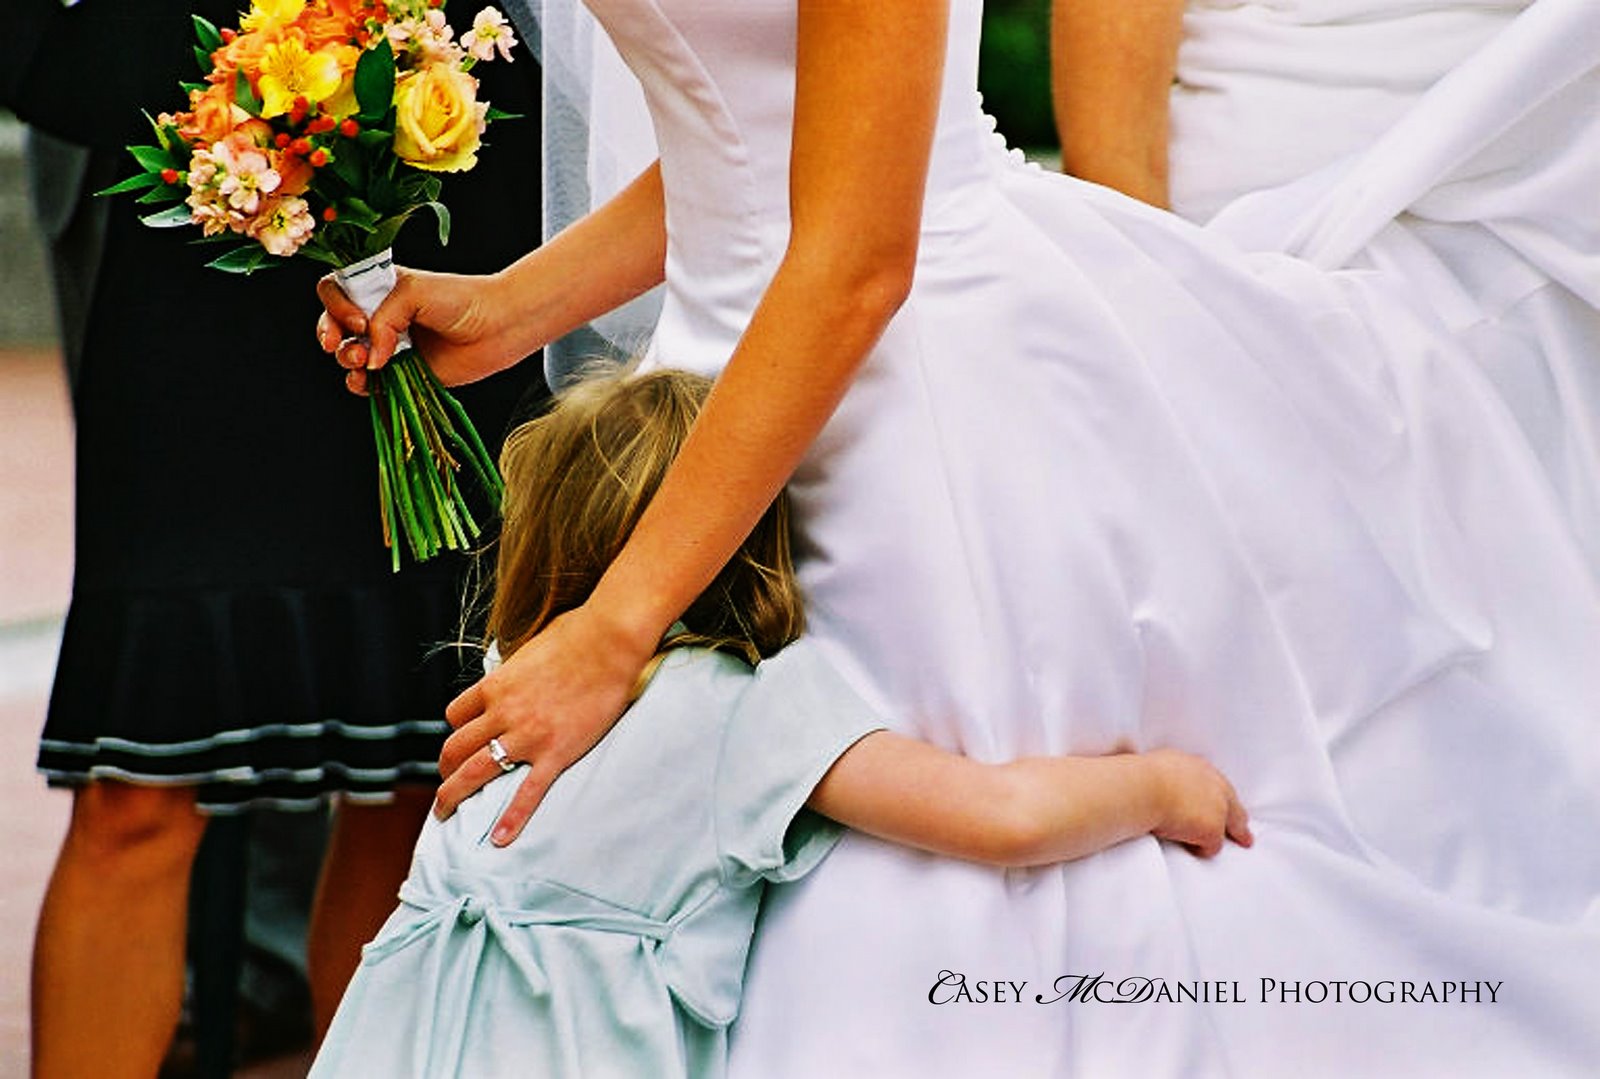 [hugging+the+bride+elegant+watermark.jpg]